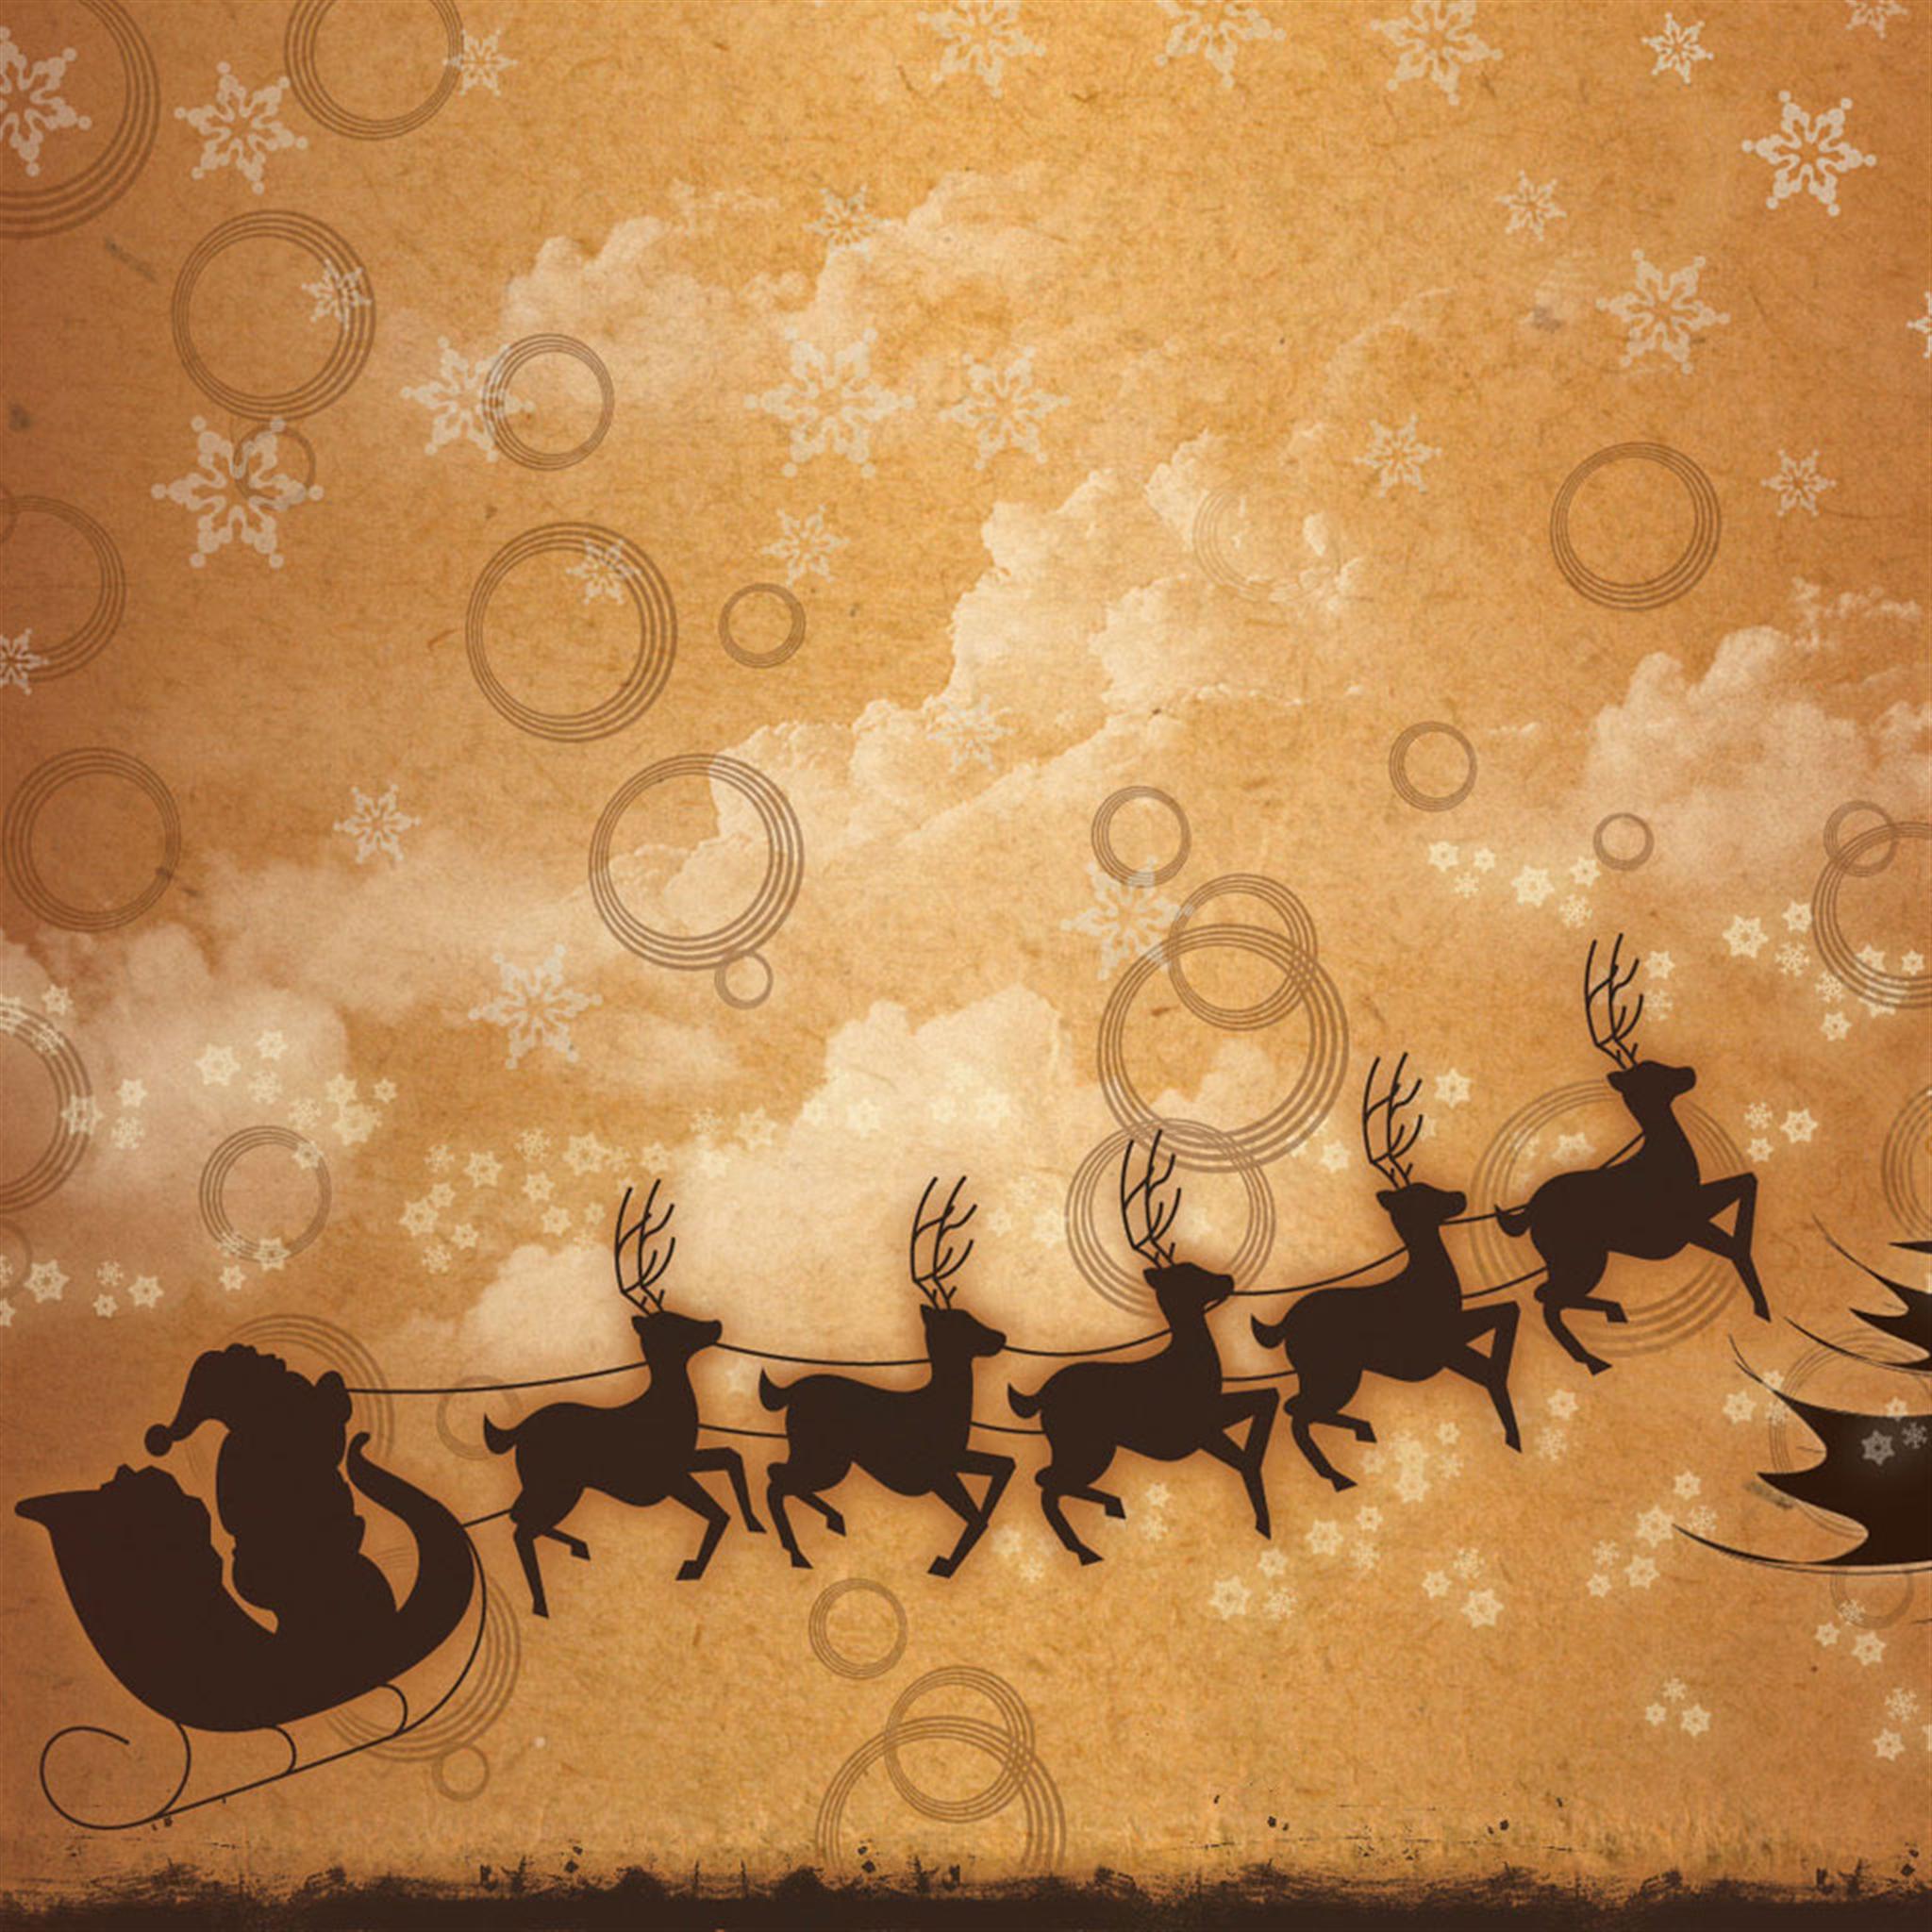 ヴィンテージなサンタクロースのイラスト クリスマスのipad壁紙 Ipad タブレット壁紙ギャラリー